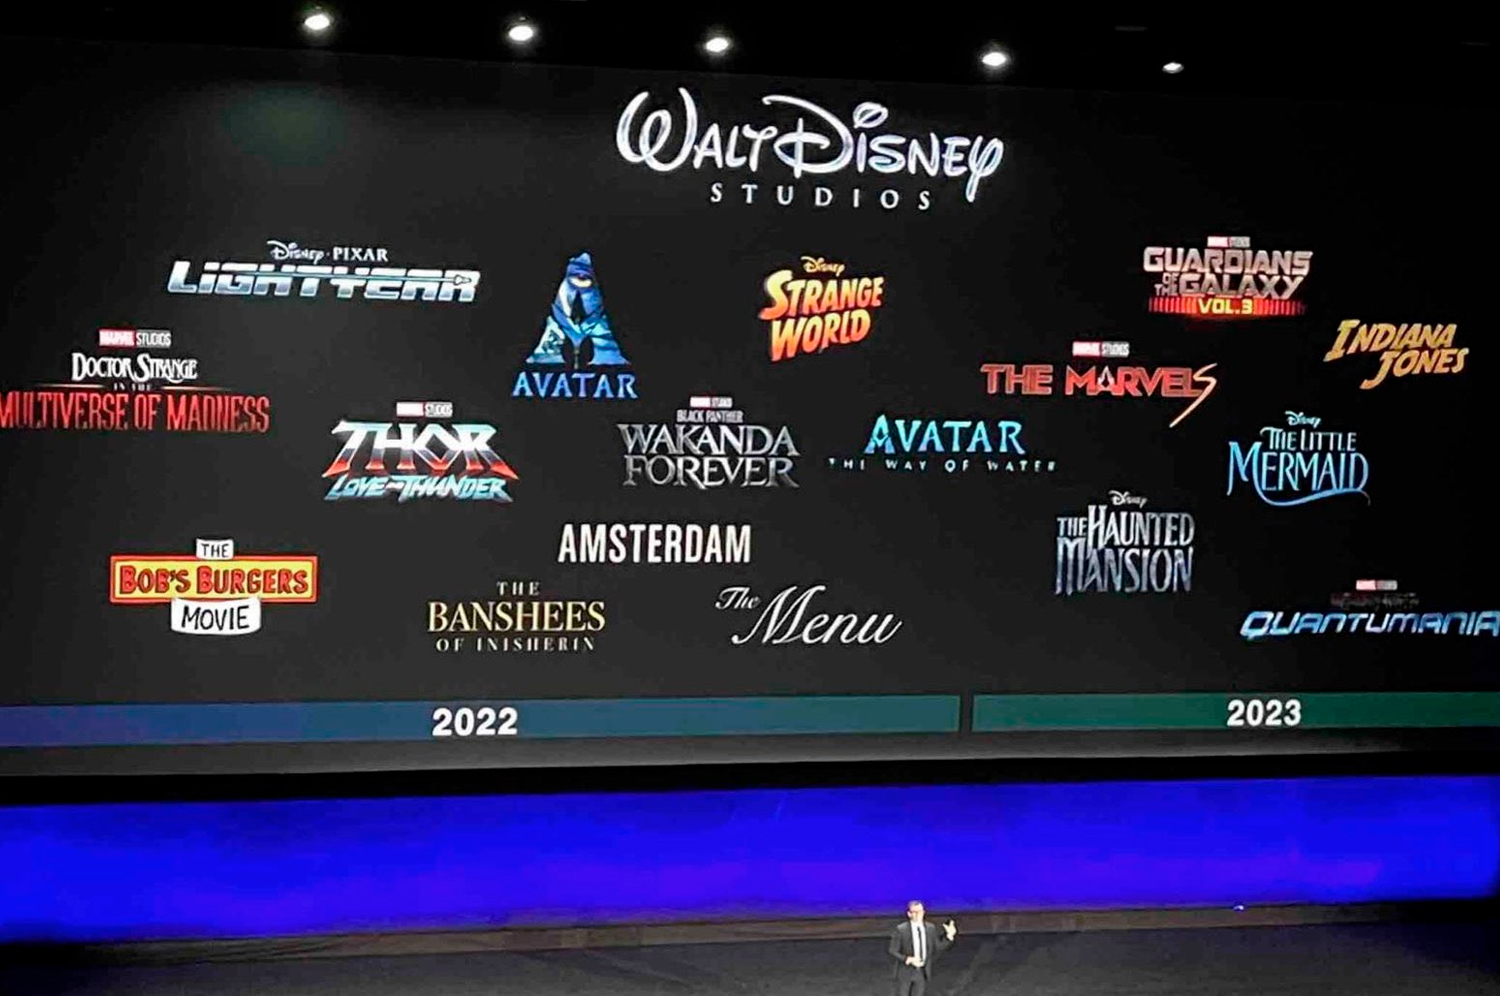 Estúdio divulgou painel com os principais lançamentos futuros do grupo (Imagem: Reprodução/Alamanaque Disney).